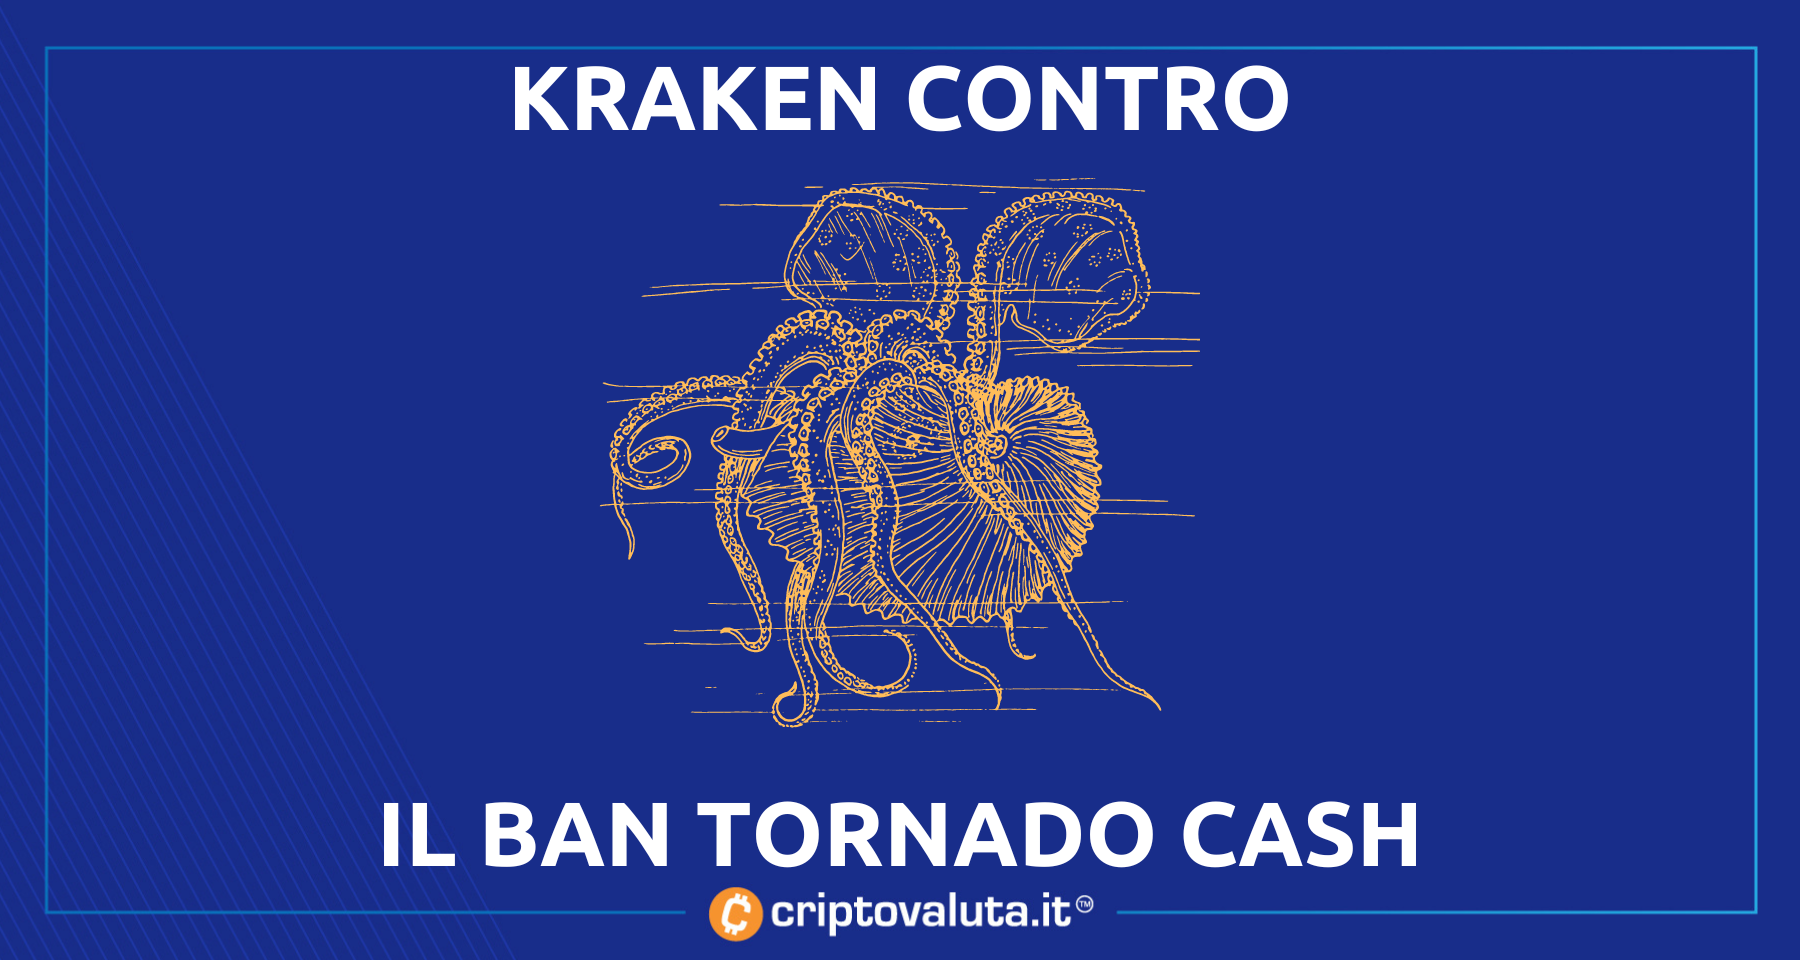 Il capo di Kraken contro il ban | “Il ban di Tornado Cash è sbagliato!”